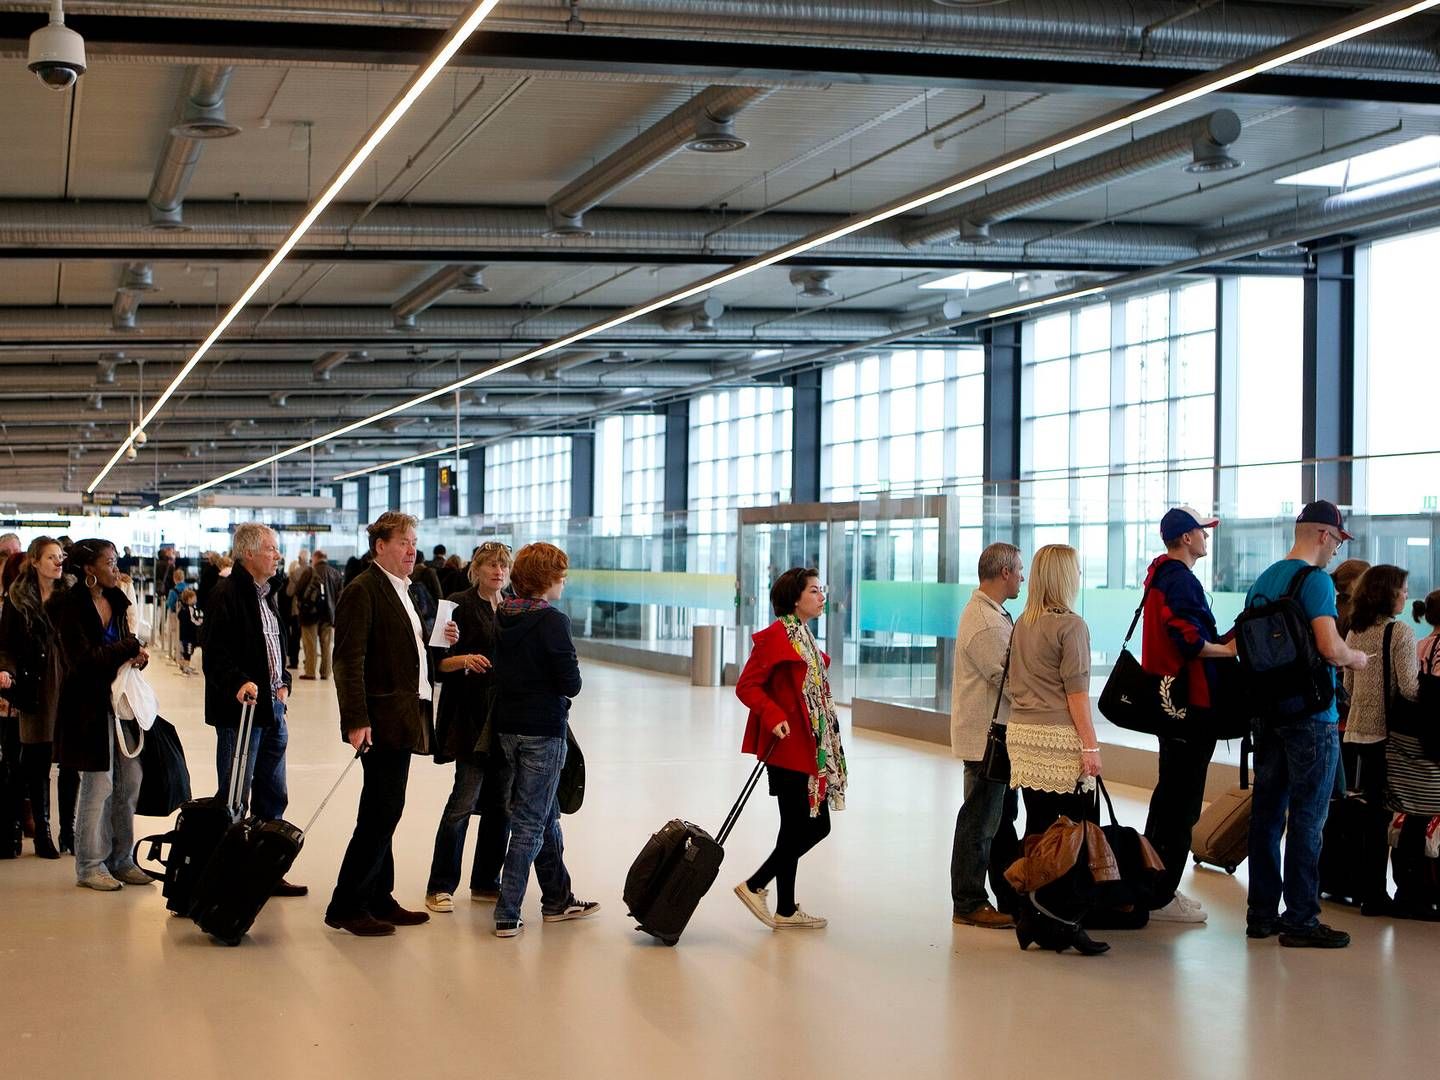 En afgift der medfører passagertab, stemmer ikke overens med at fremme de regionale lufthavne, lyder det fra Kenneth Fredslund (DD). | Foto: Finn Frandsen/Politiken/Ritzau Scanpix